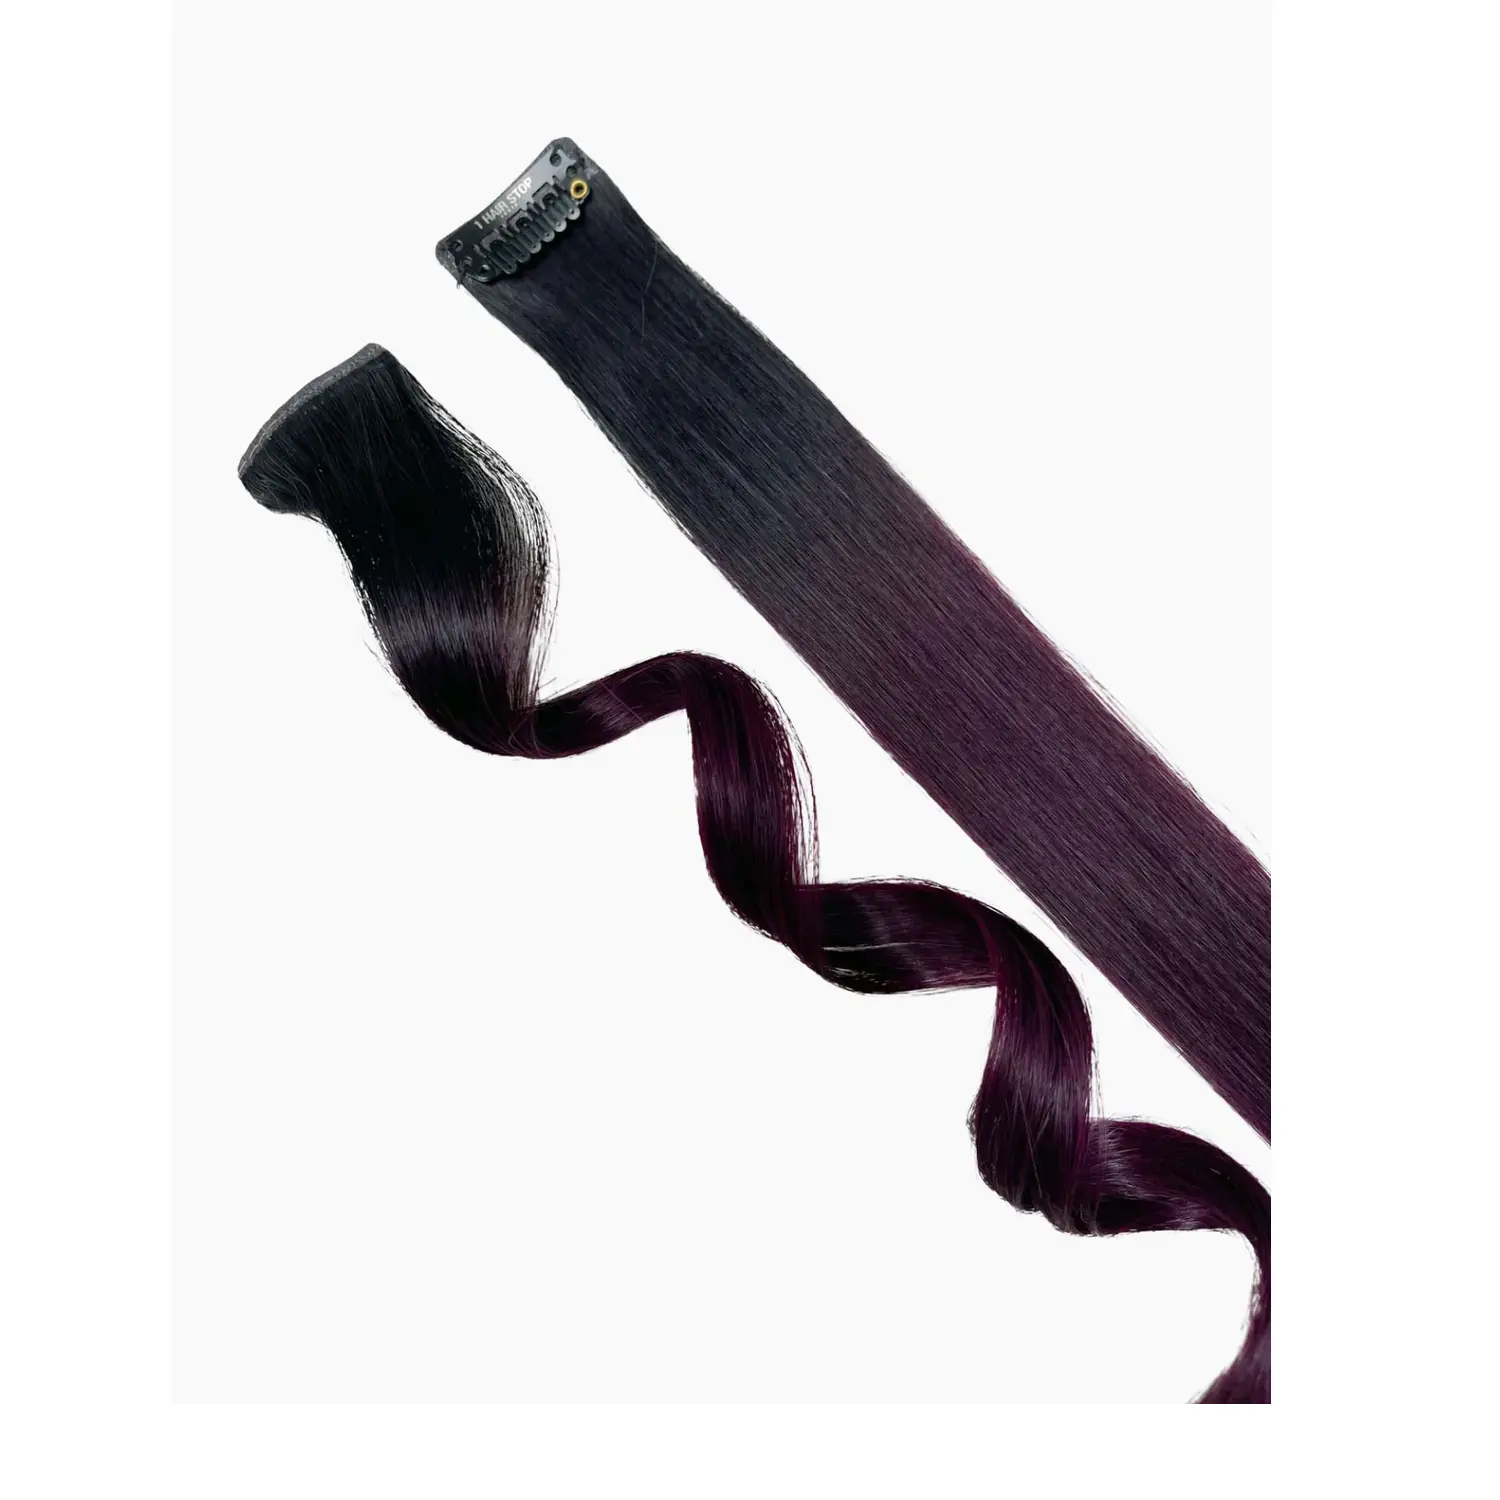 Clipe de cabelo com listras violeta Ombre, extensão de cabelo 100% virgem Remy, produto mais recente projetado por exportadores